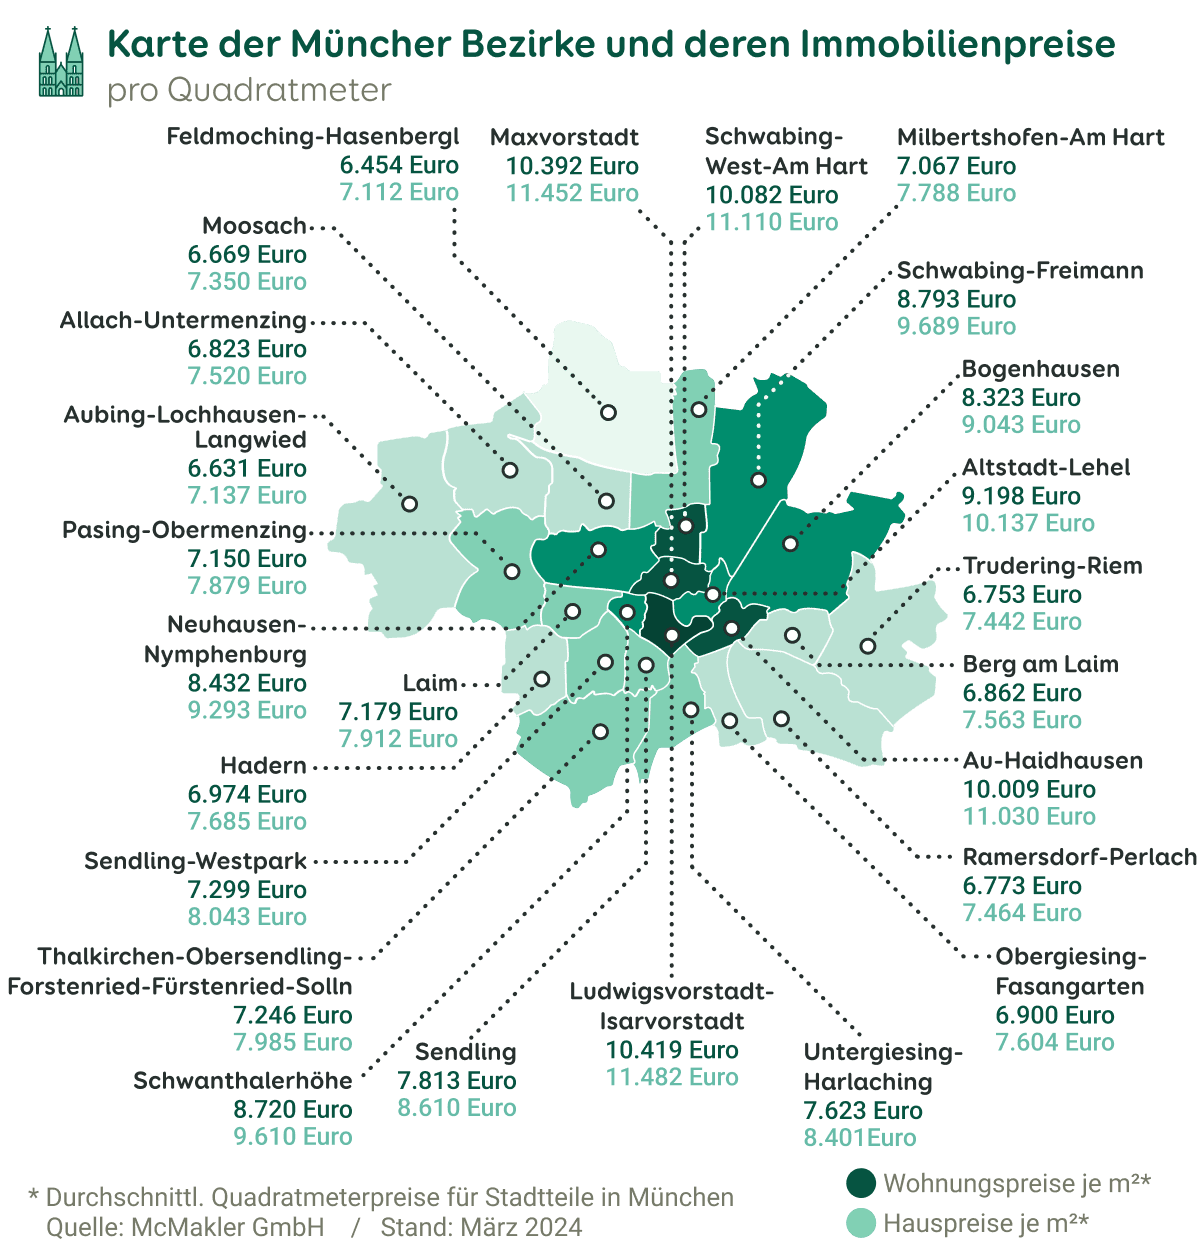 Grafik zu den Immobilienpreisen in den Stadtbezirken von München, Stand März 2024